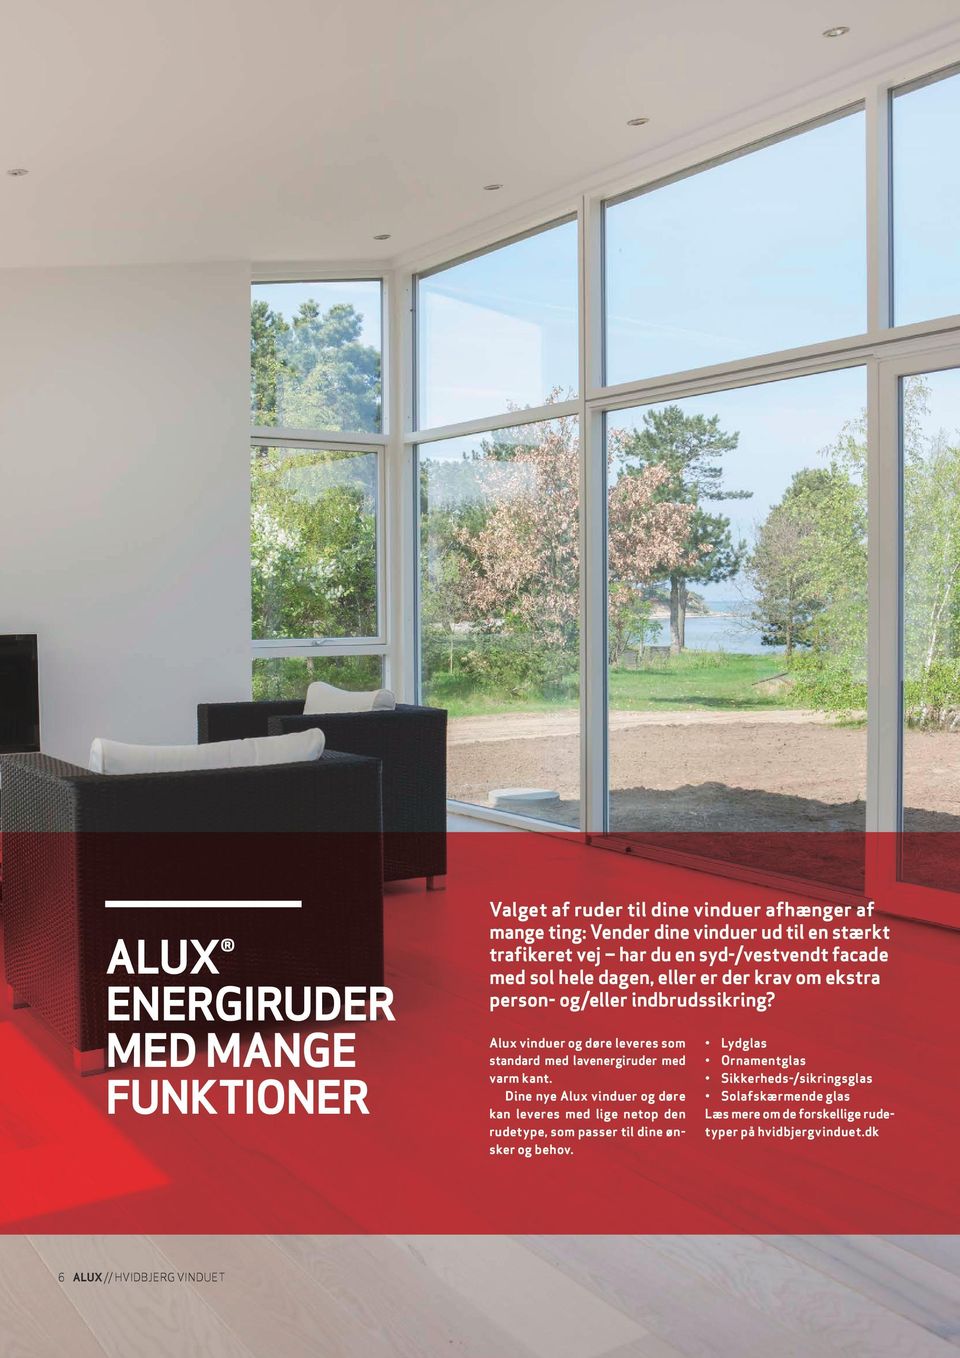 Alux vinduer og døre leveres som standard med lavenergiruder med varm kant.